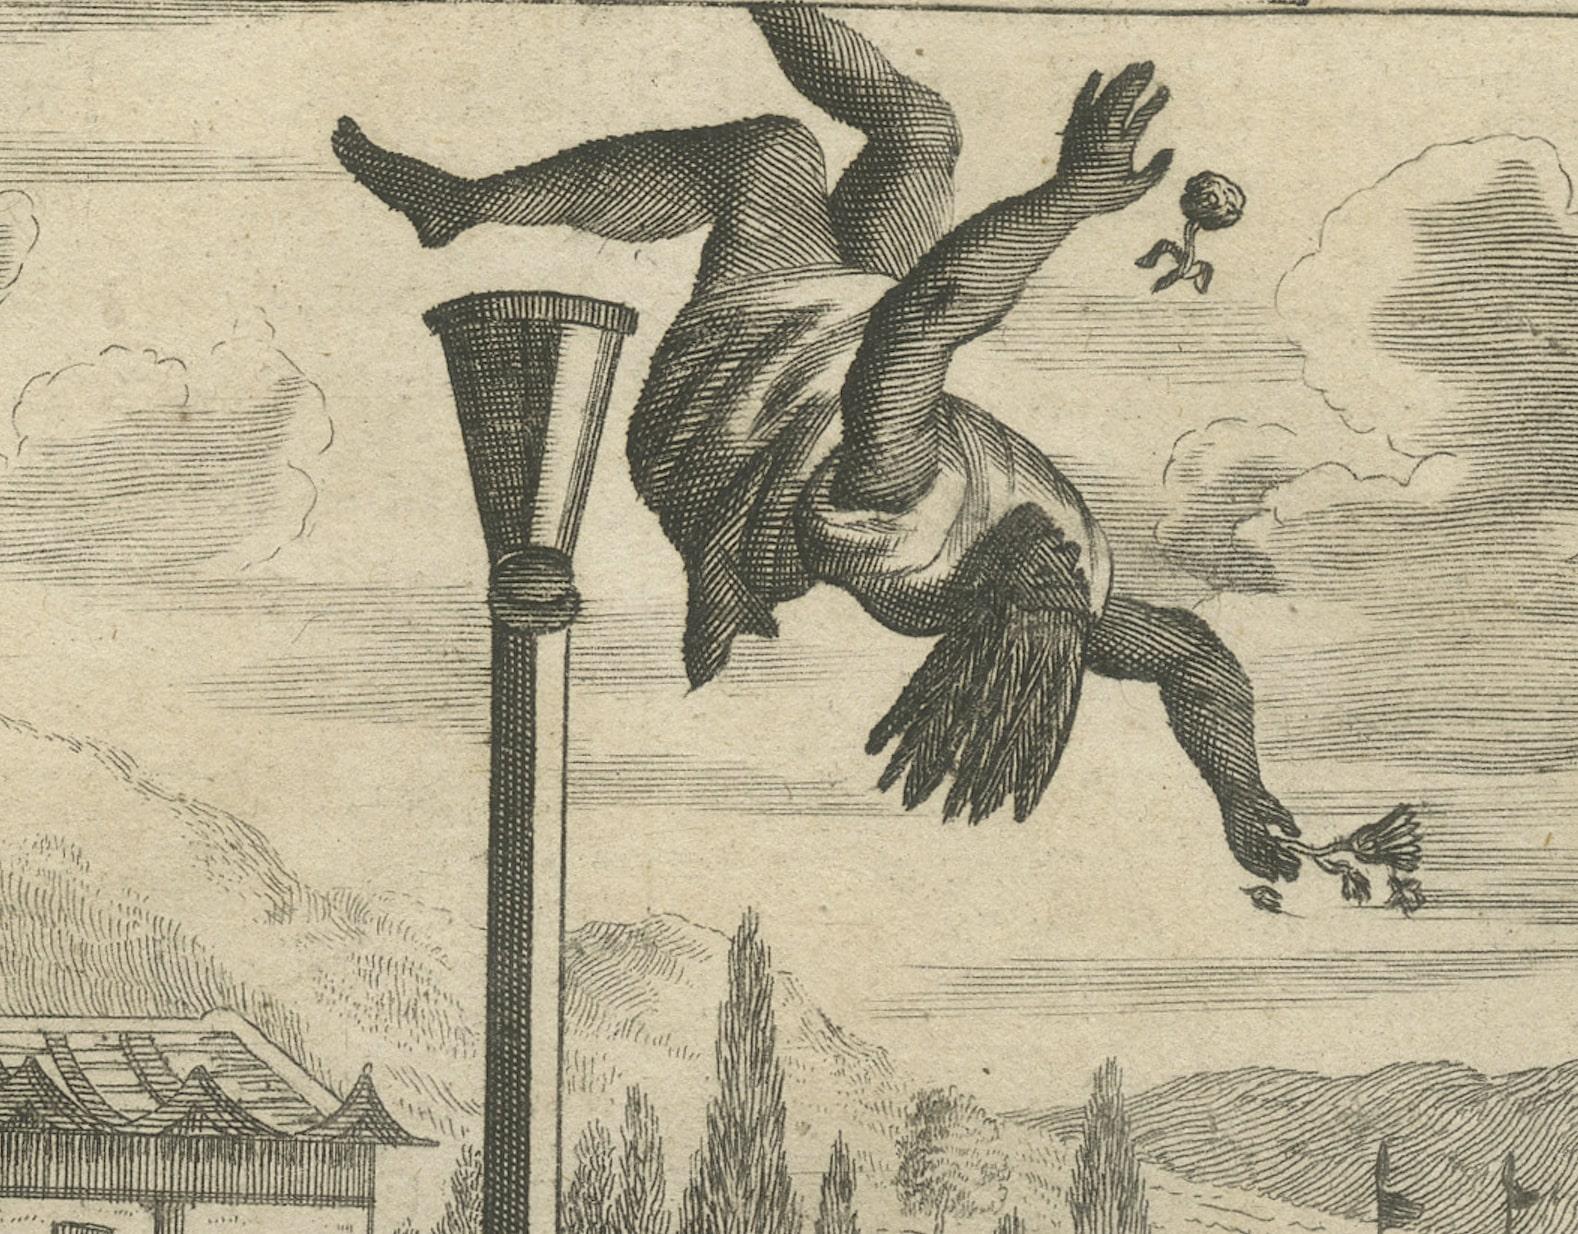 This evocative original copper engraving, featured in Arnoldus Montanus' 